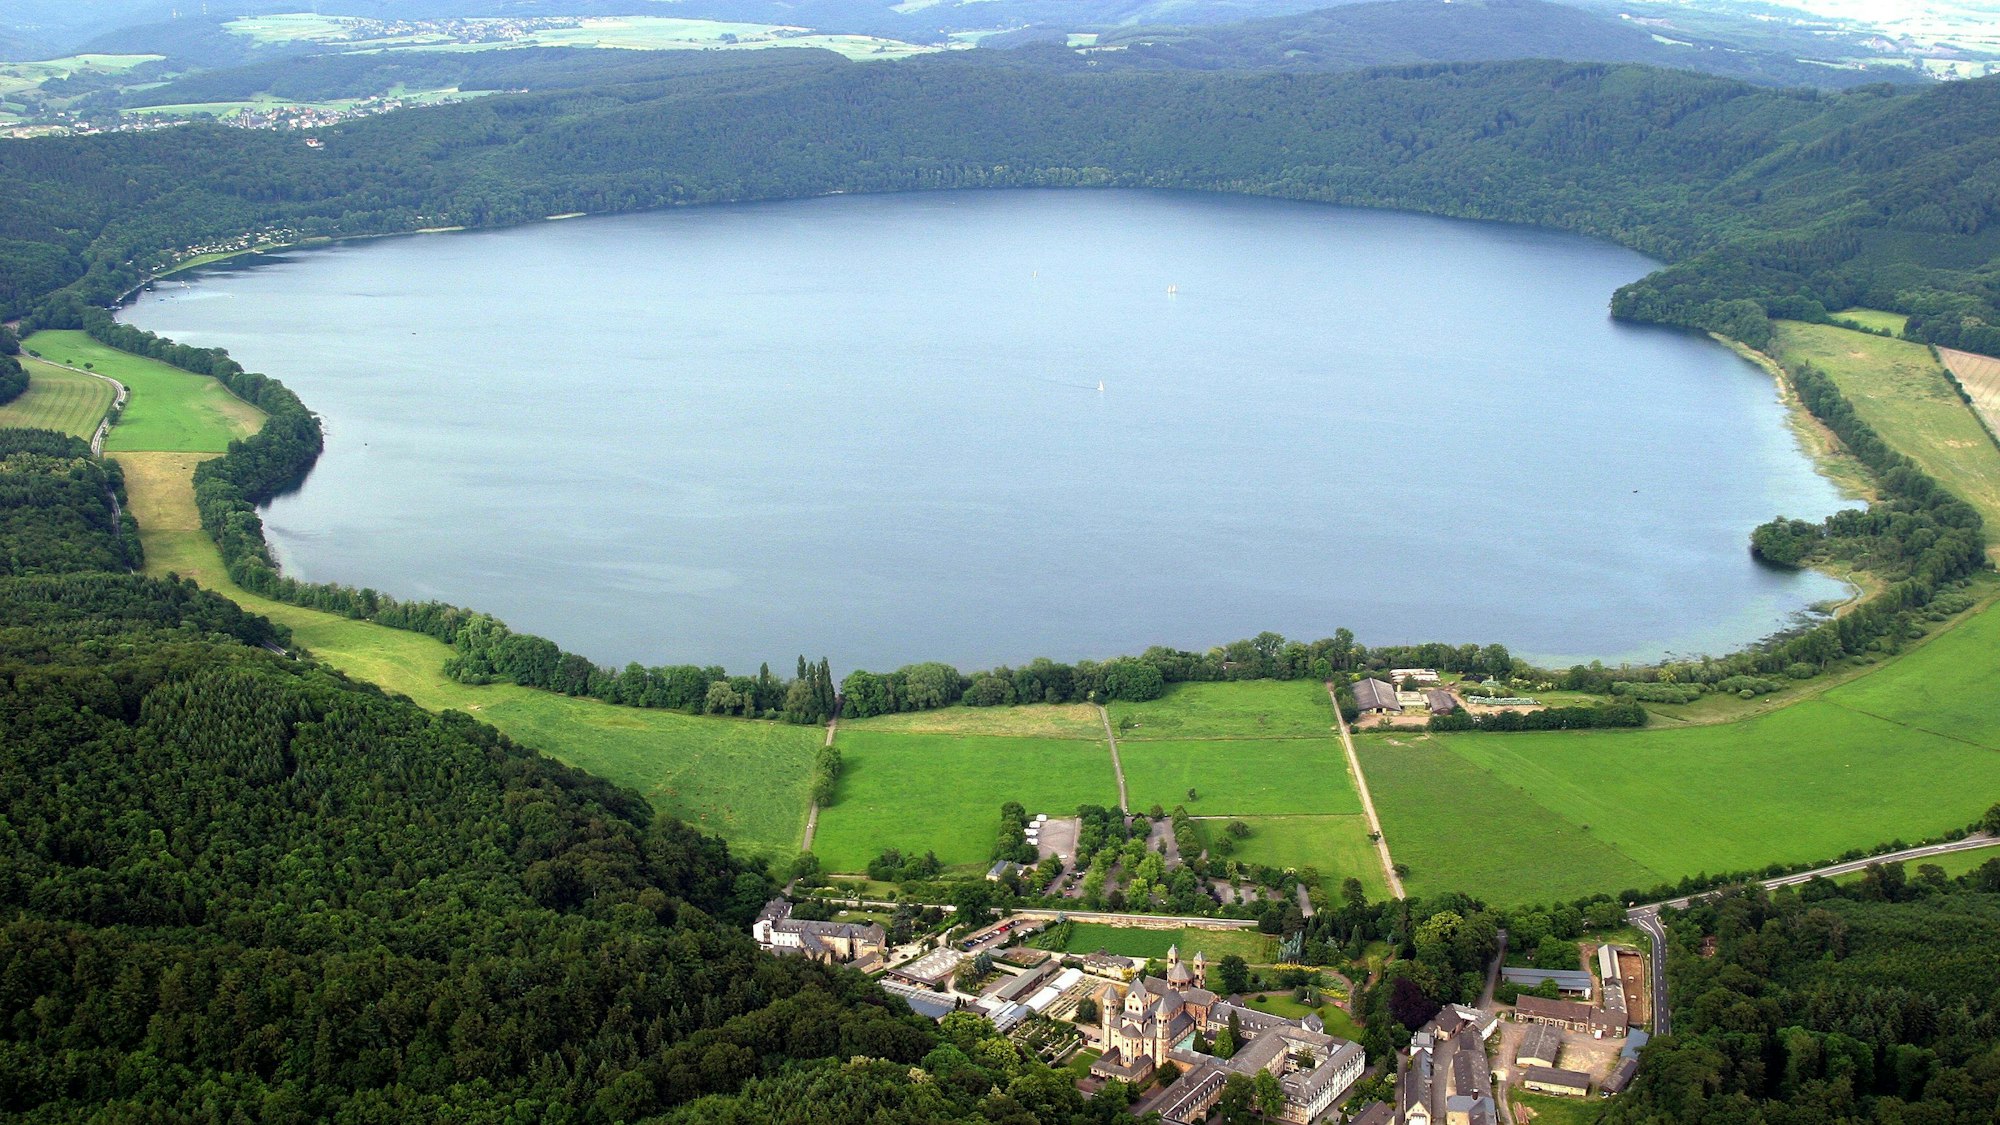 Luftbild von Mendig mit dem Laacher See und dem Kloster Maria Laach in der Eifel. Aufnahme von 2004.